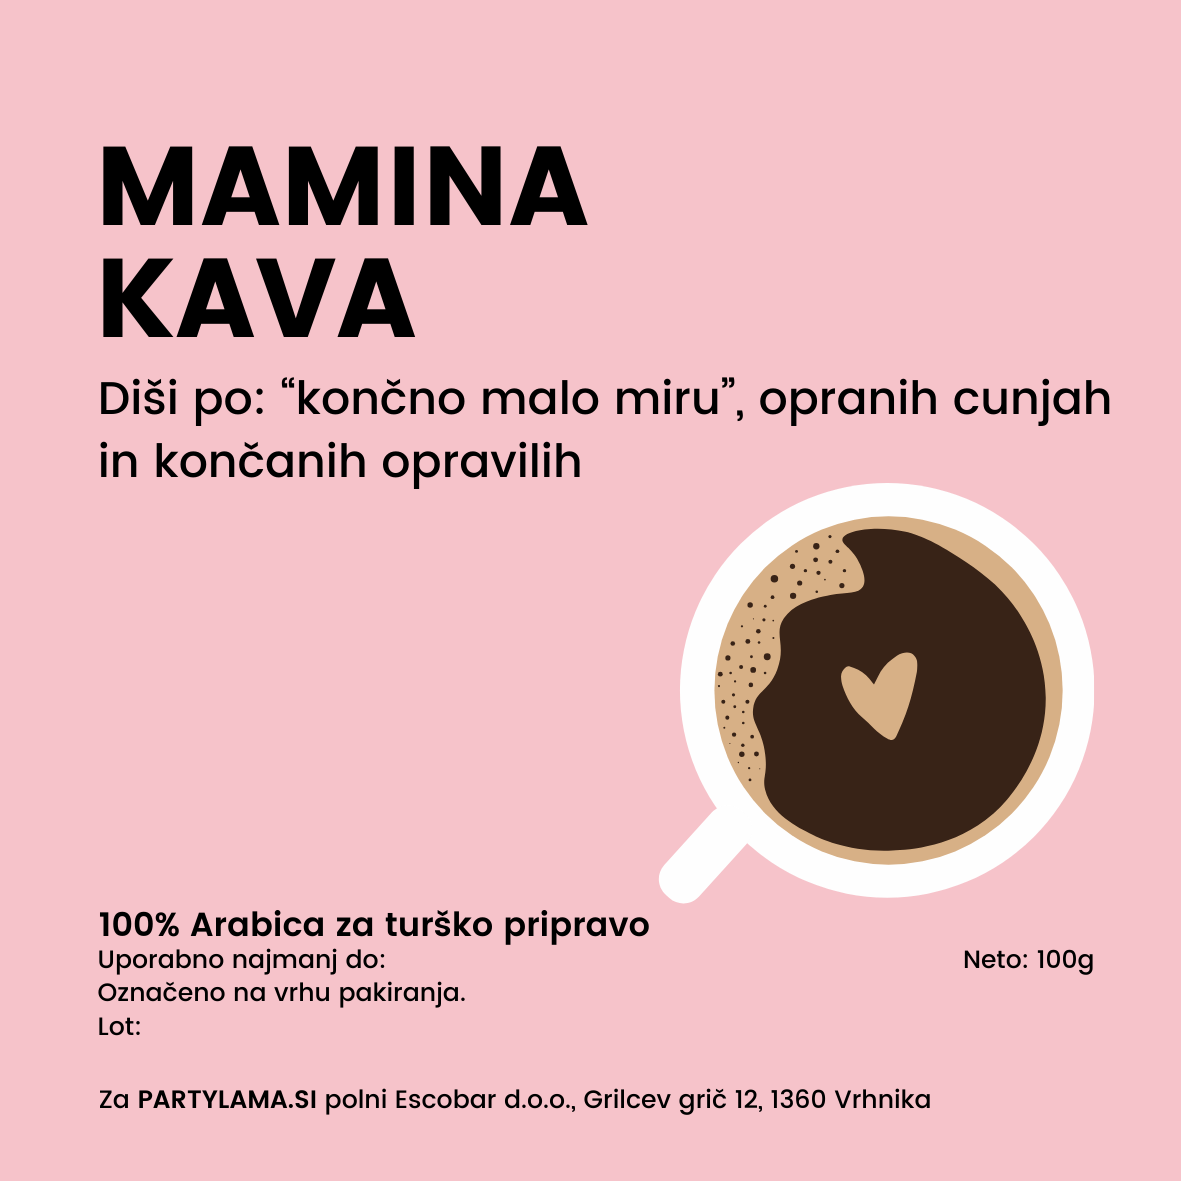 Mamina kava - Specialty kava